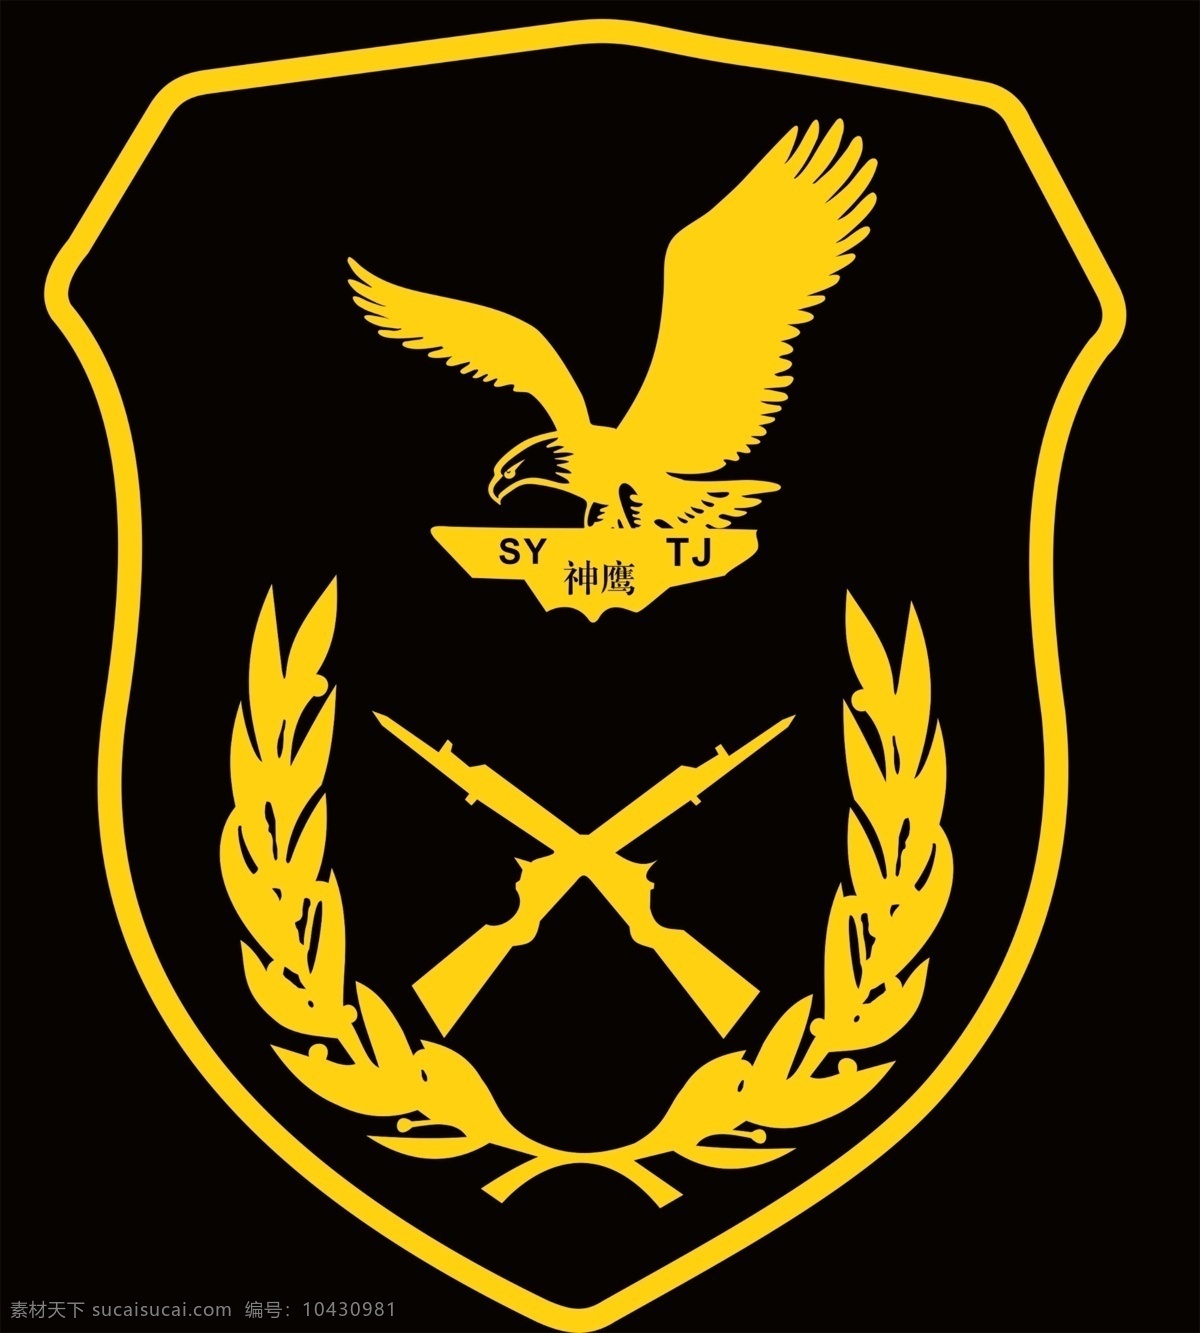 臂章 神鹰 logo 肩章 双枪 文化艺术